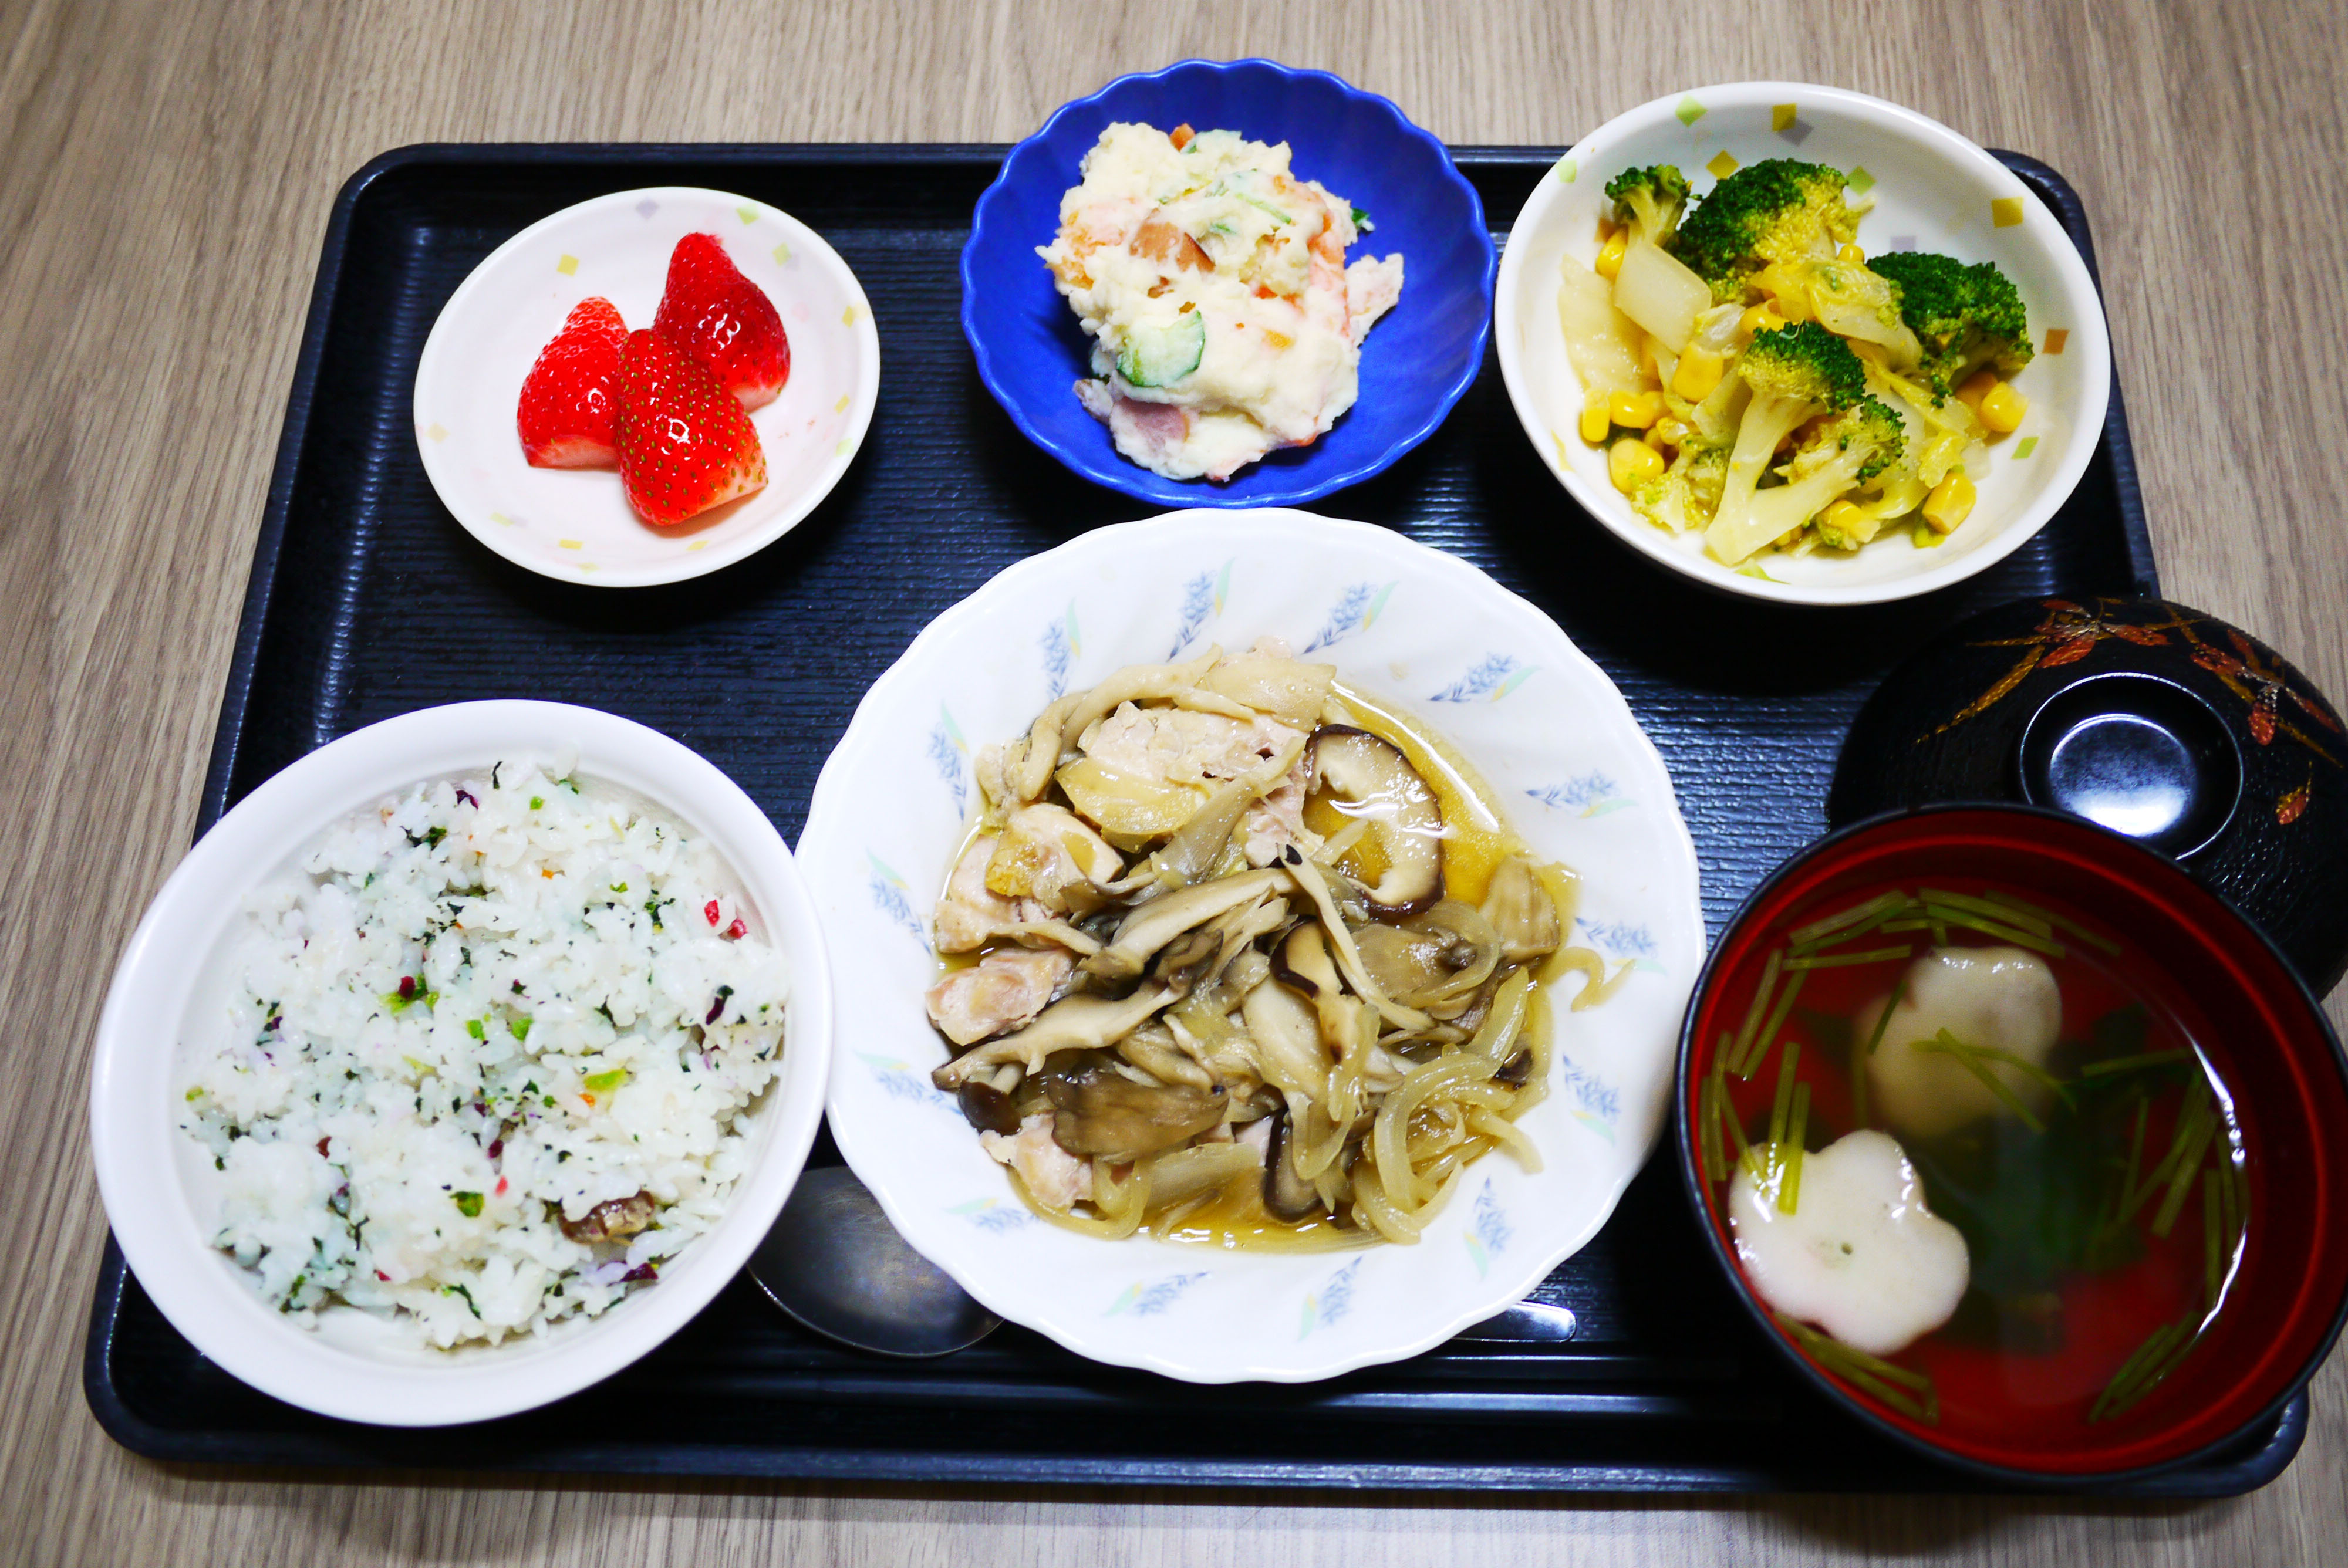 きょうのお昼ごはんは、大豆ご飯、鶏肉のきのこ蒸し、ポテトサラダ、花野菜、お吸い物、果物でした。